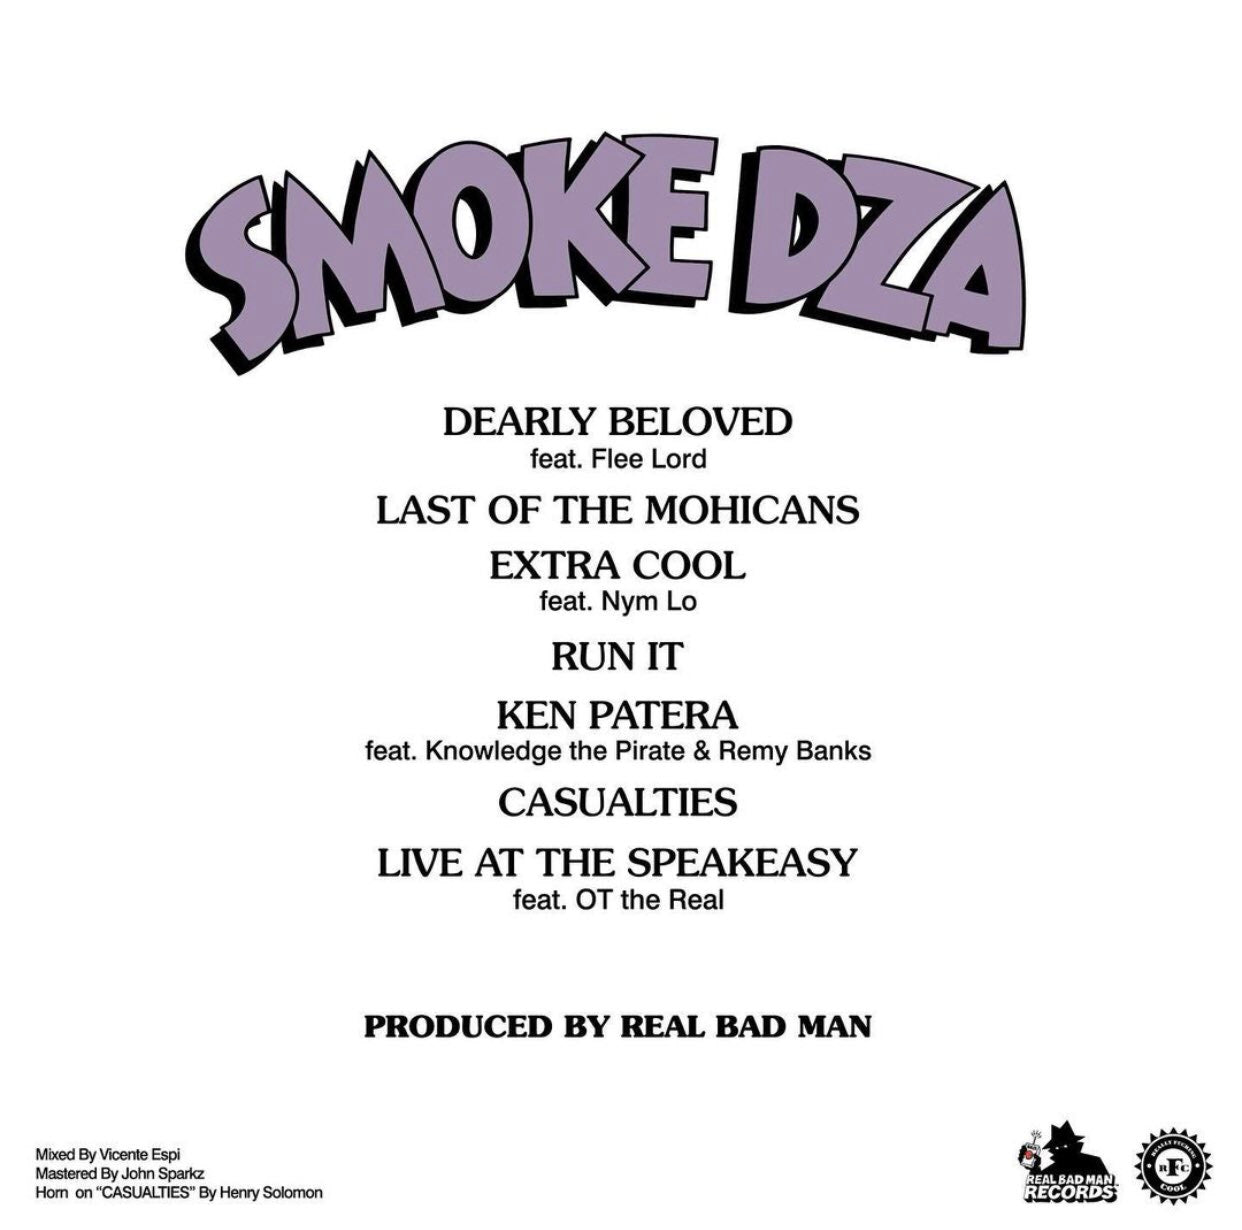 Smoke DZA - Mood$wings (OBI)